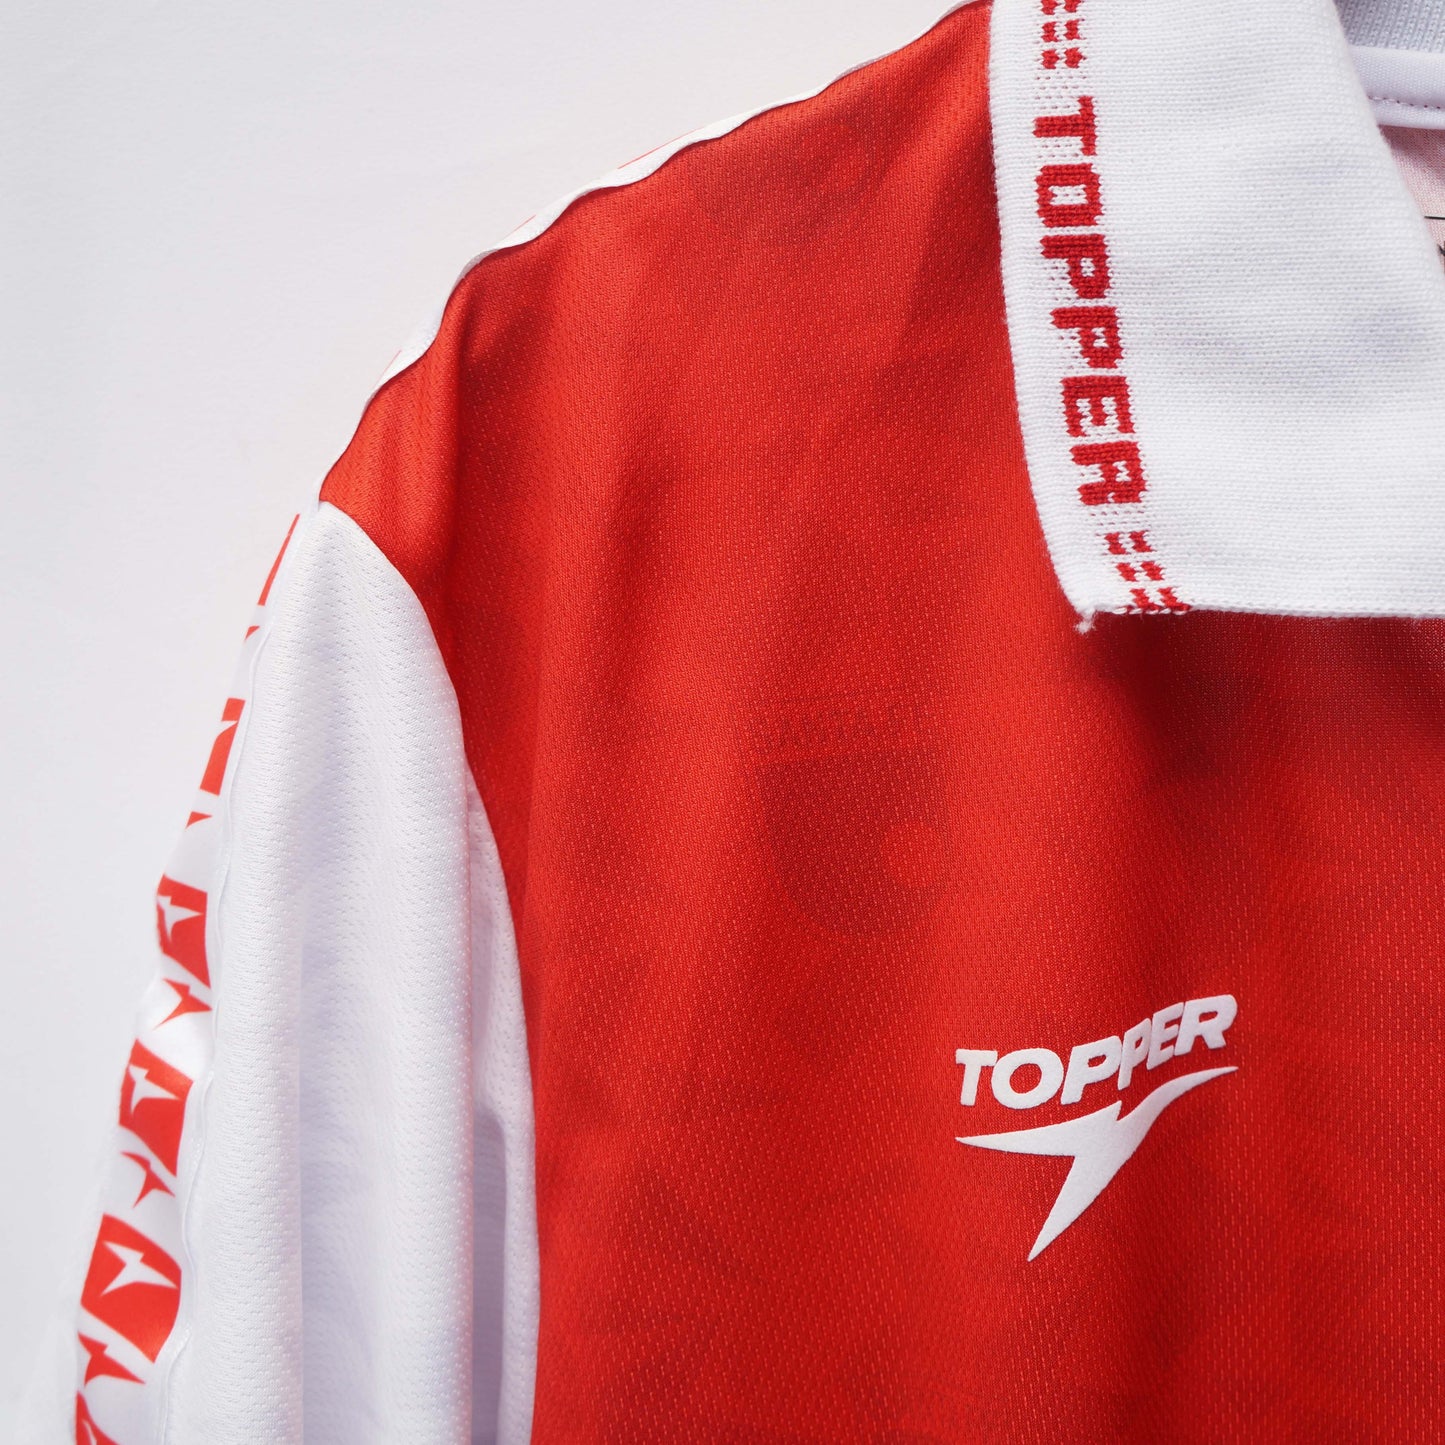 Camiseta Independiente Santa Fe Topper Roja 1998